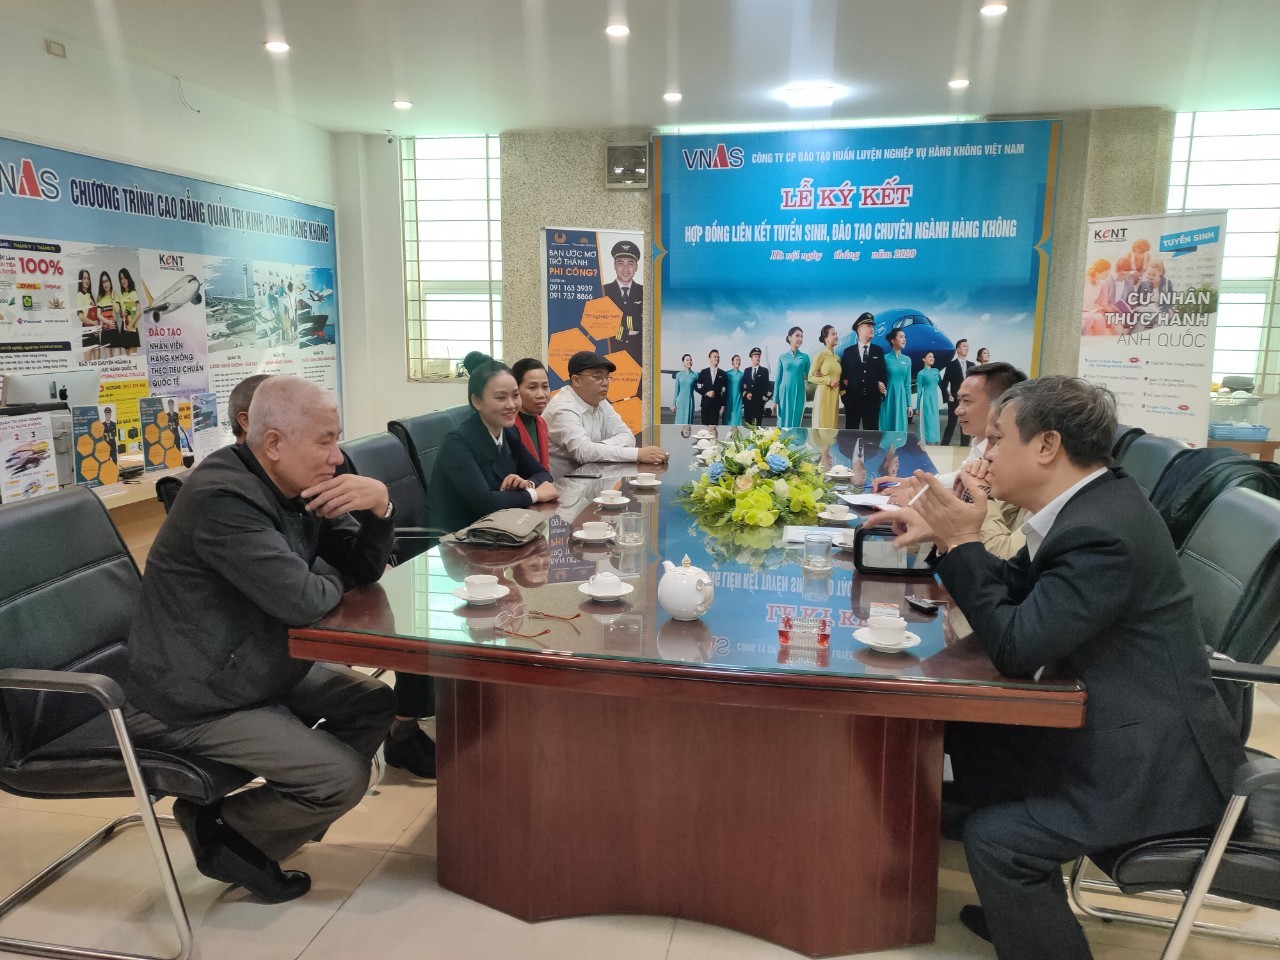 TChi bộ Công ty Cổ phần Đào tạo Huấn luyện Nghiệp vụ Hàng không Việt Nam nâng cao chất lượng sinh hoạt Đảng